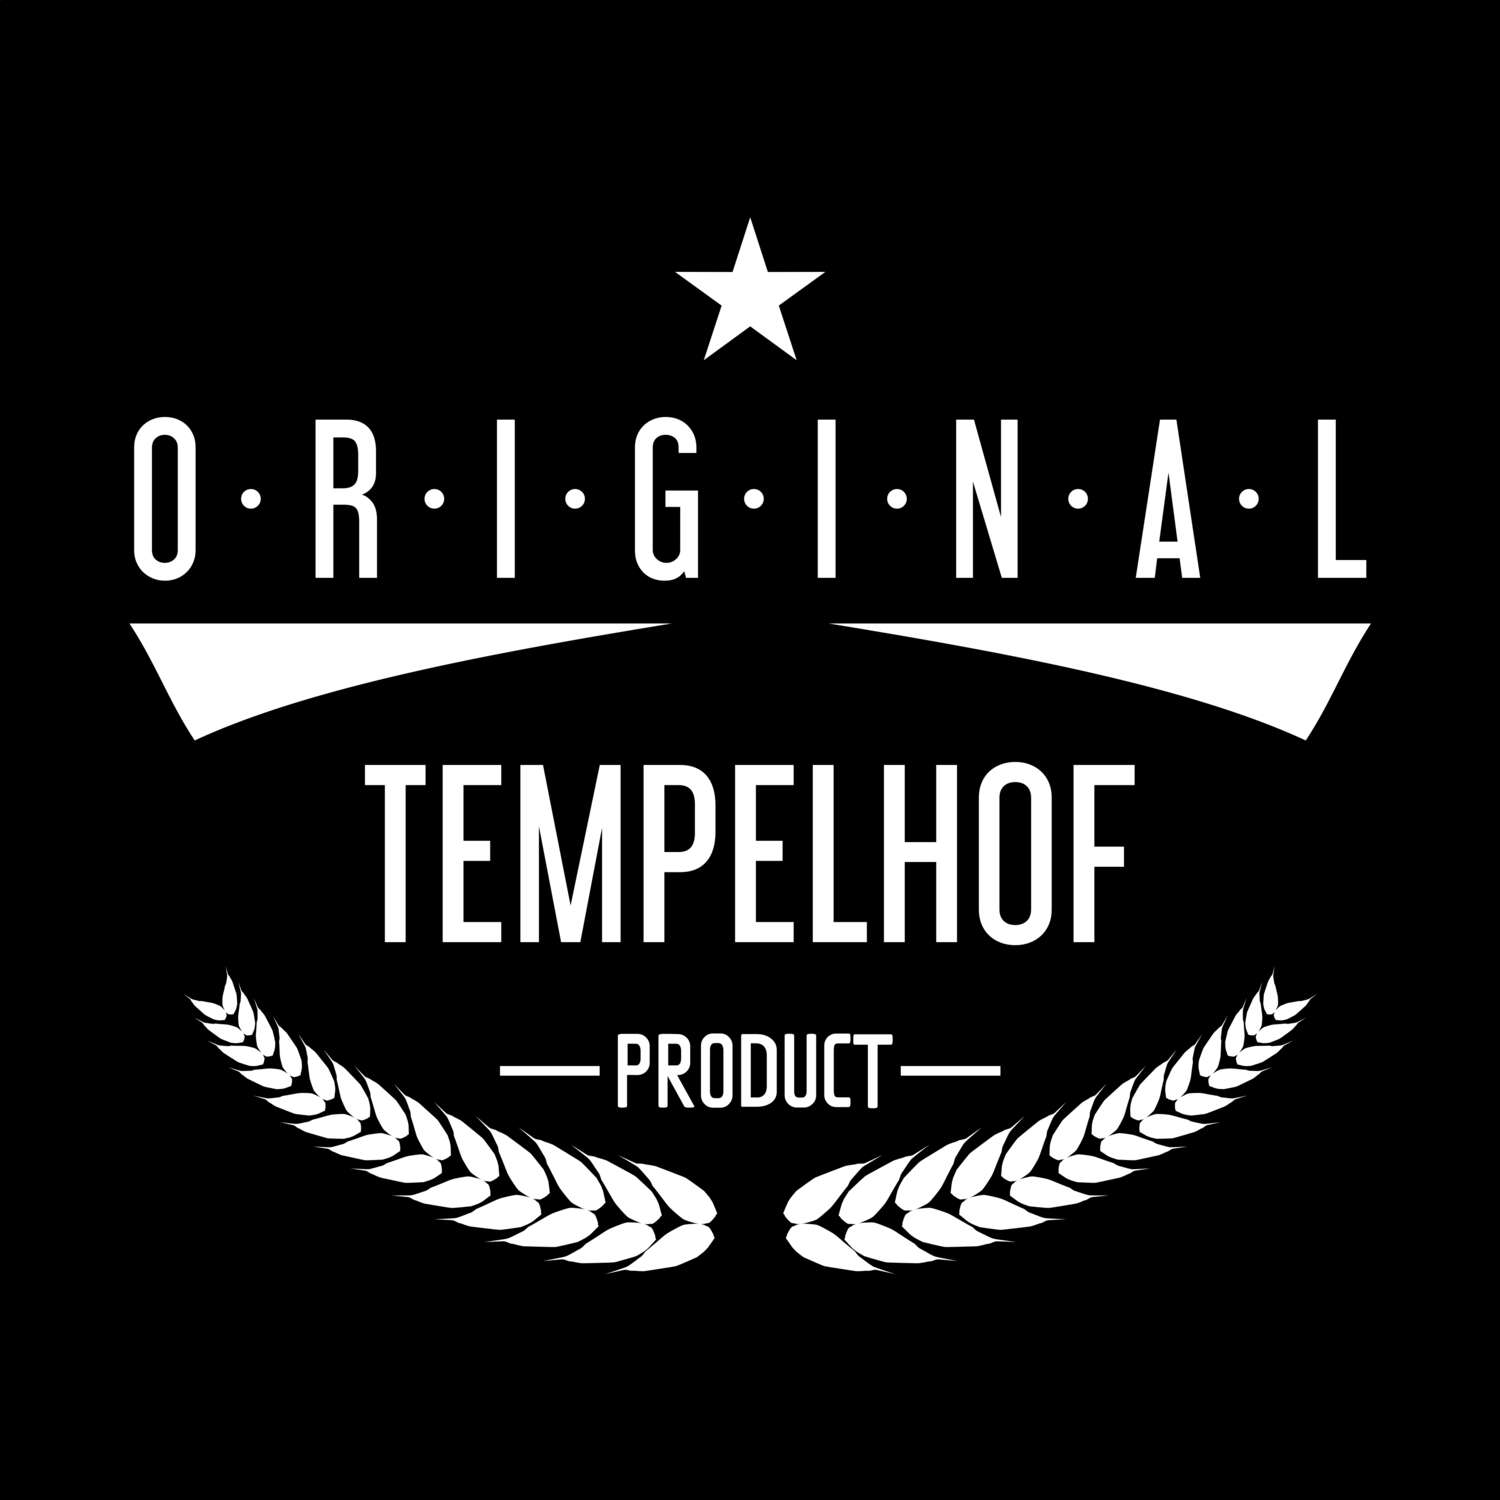 Tempelhof T-Shirt »Original Product«